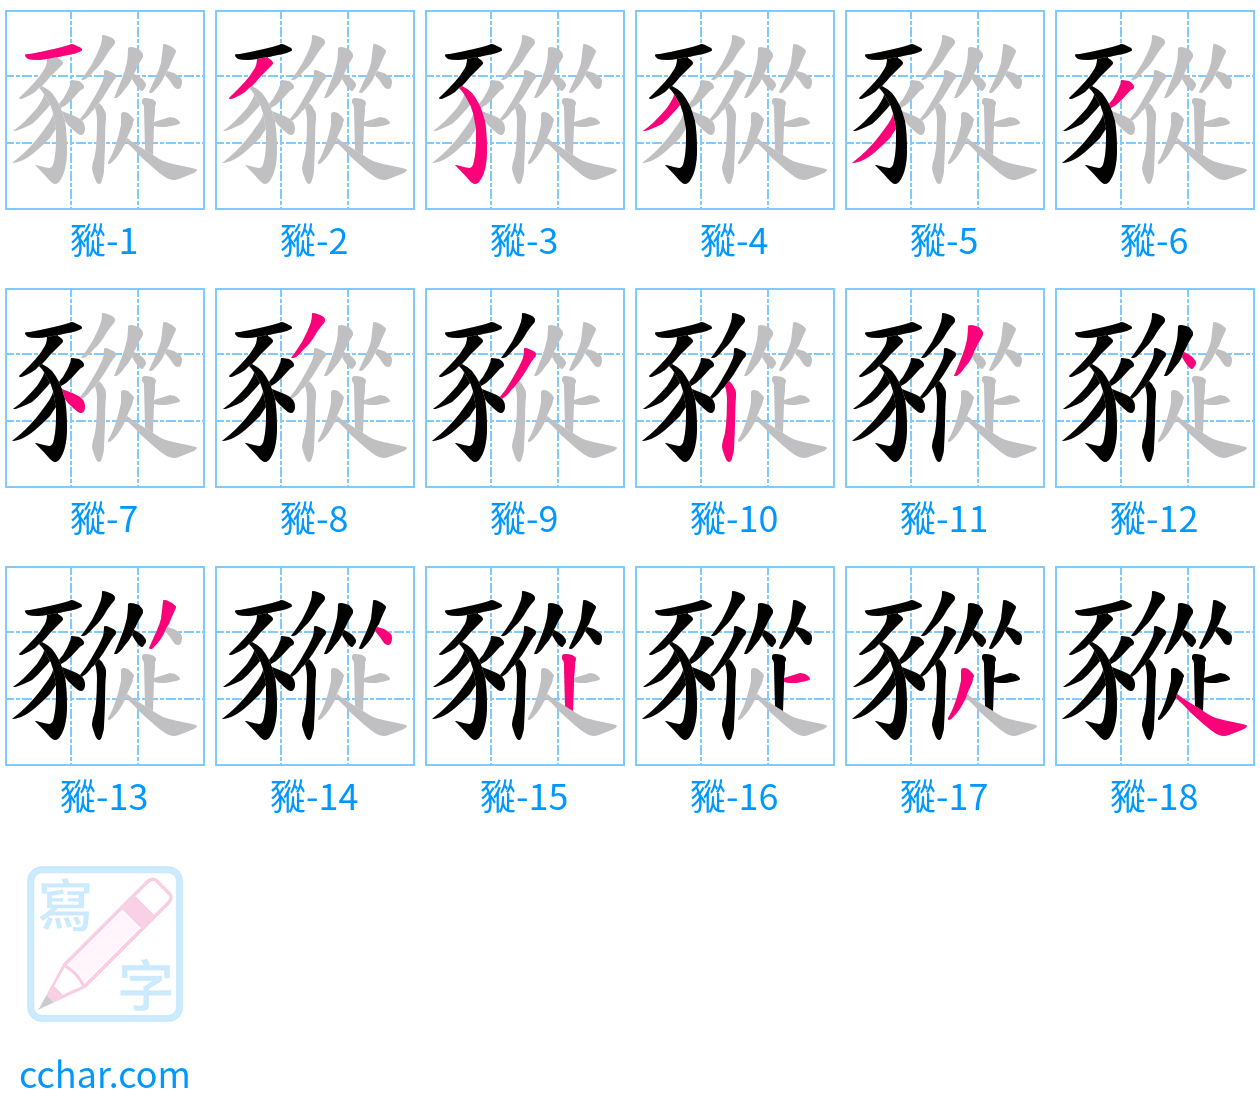 豵 stroke order step-by-step diagram